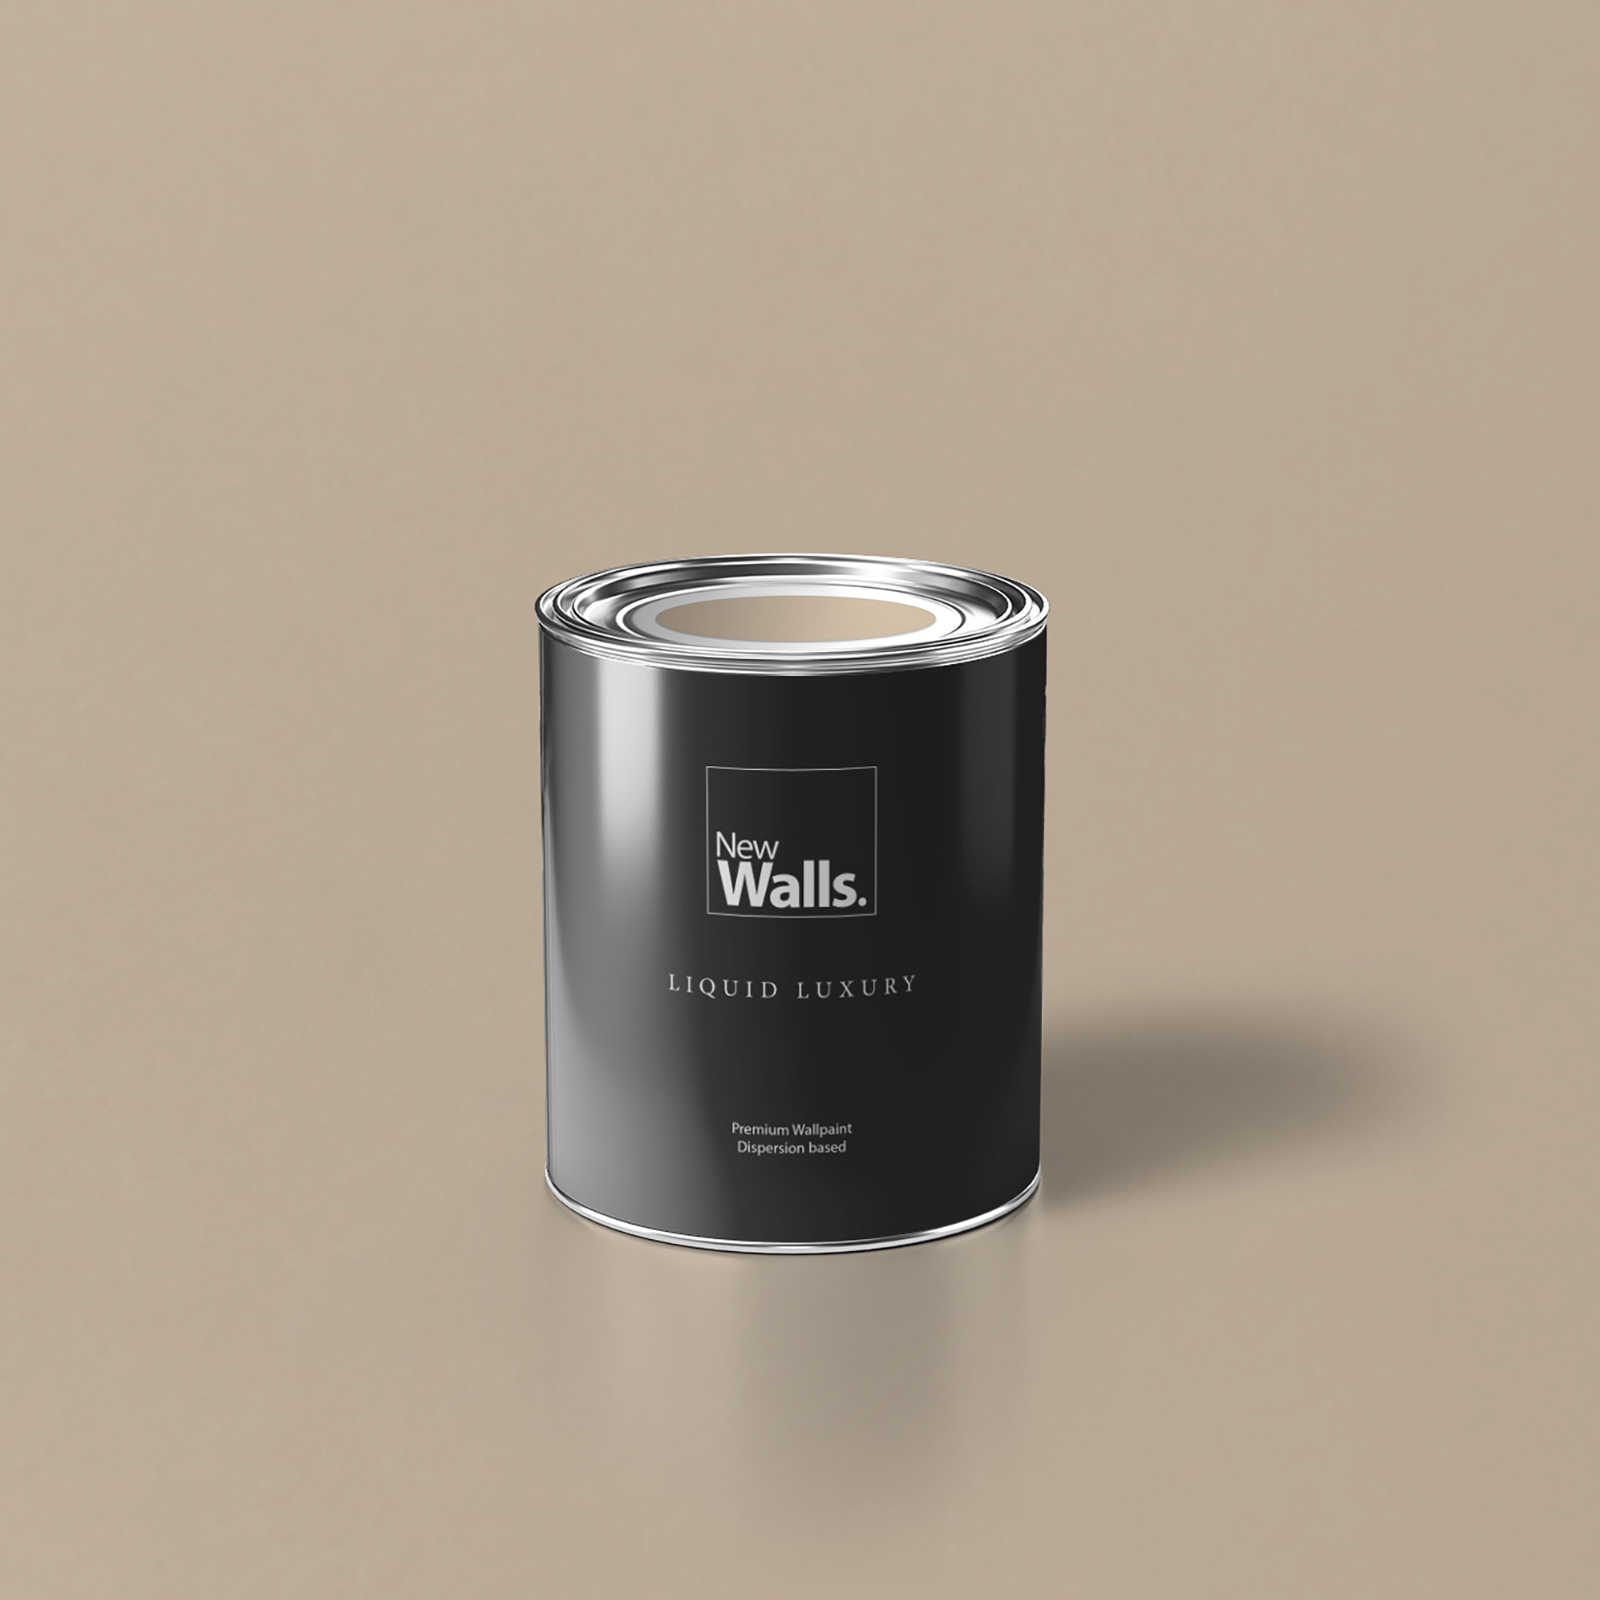         Premium Wall Paint timeless light beige »Modern Mud« NW715 – 1 litre
    